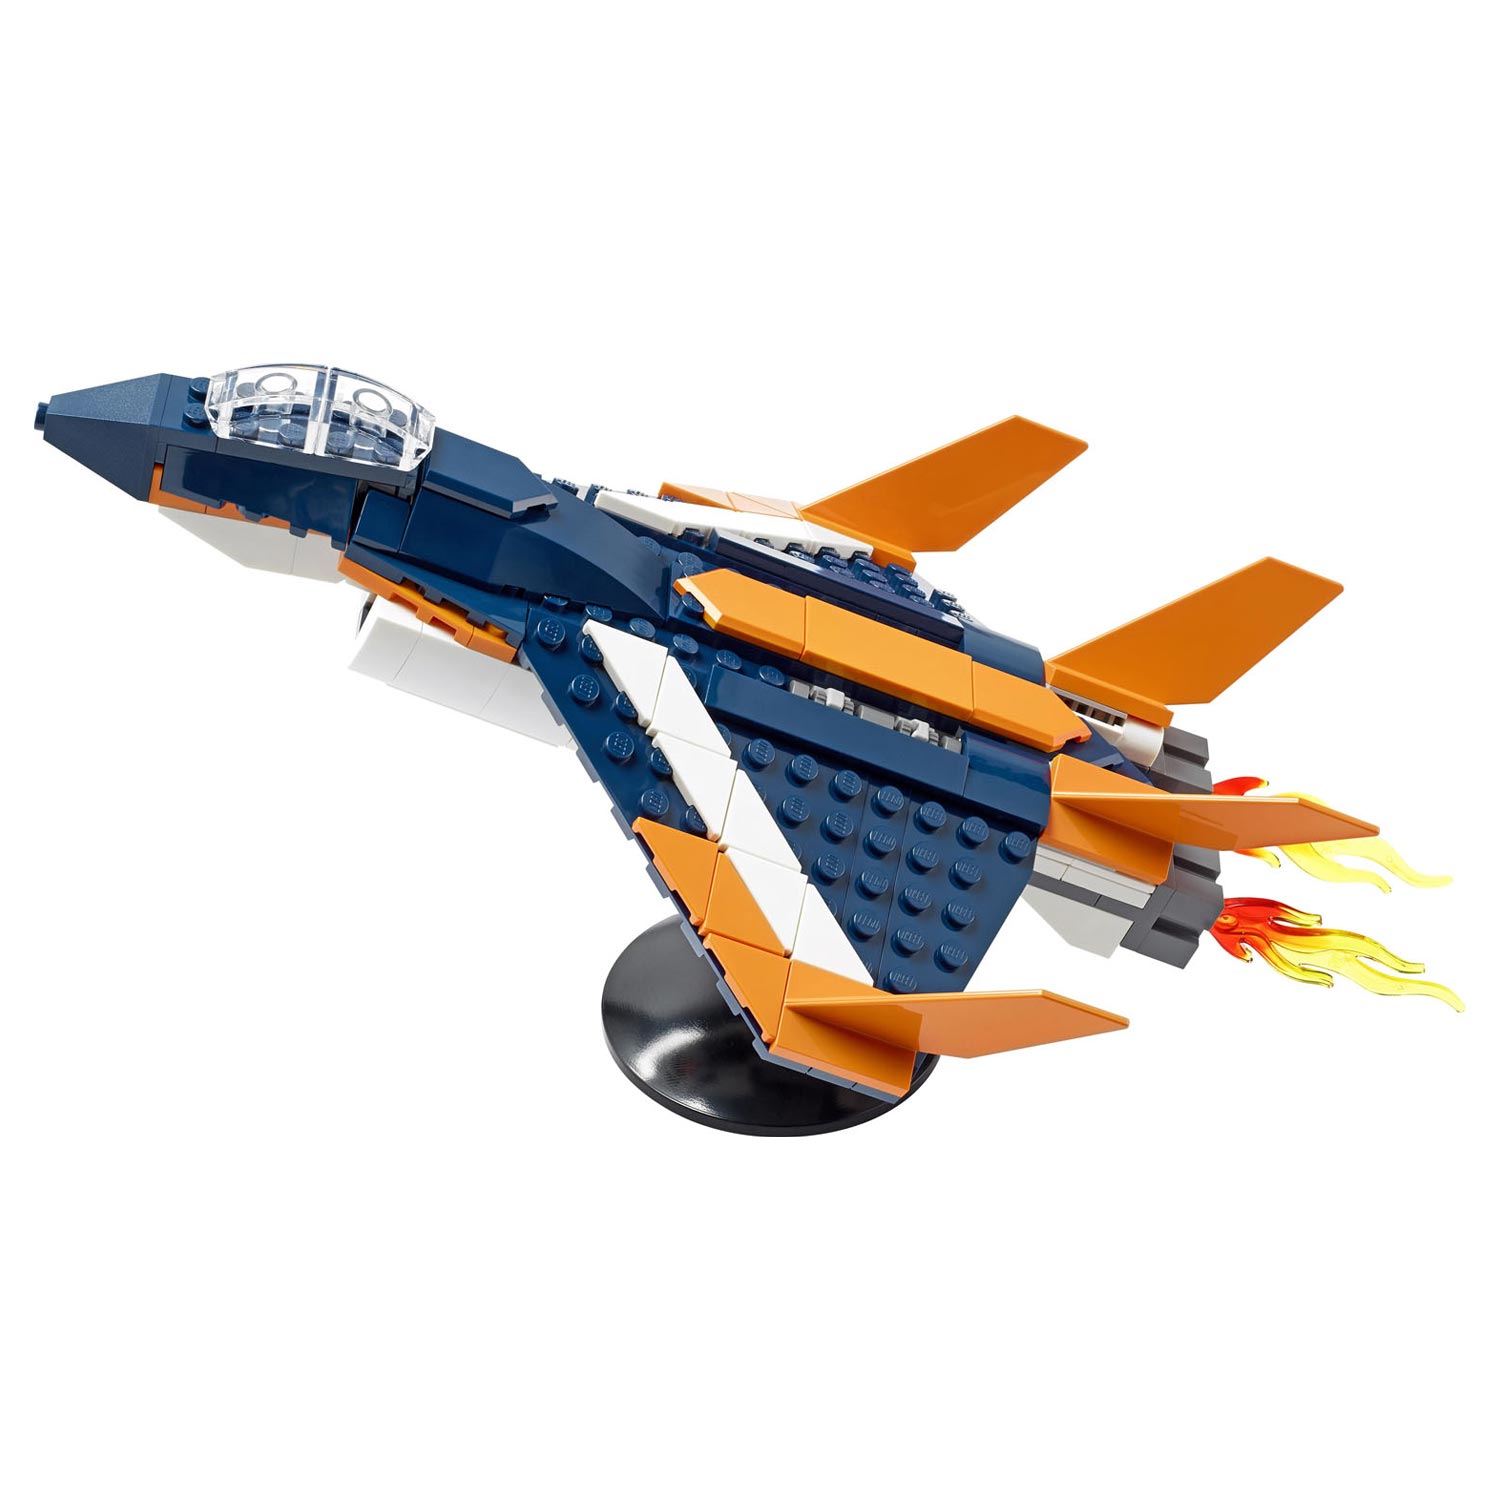 LEGO Creator 31126 L'avion à réaction supersonique